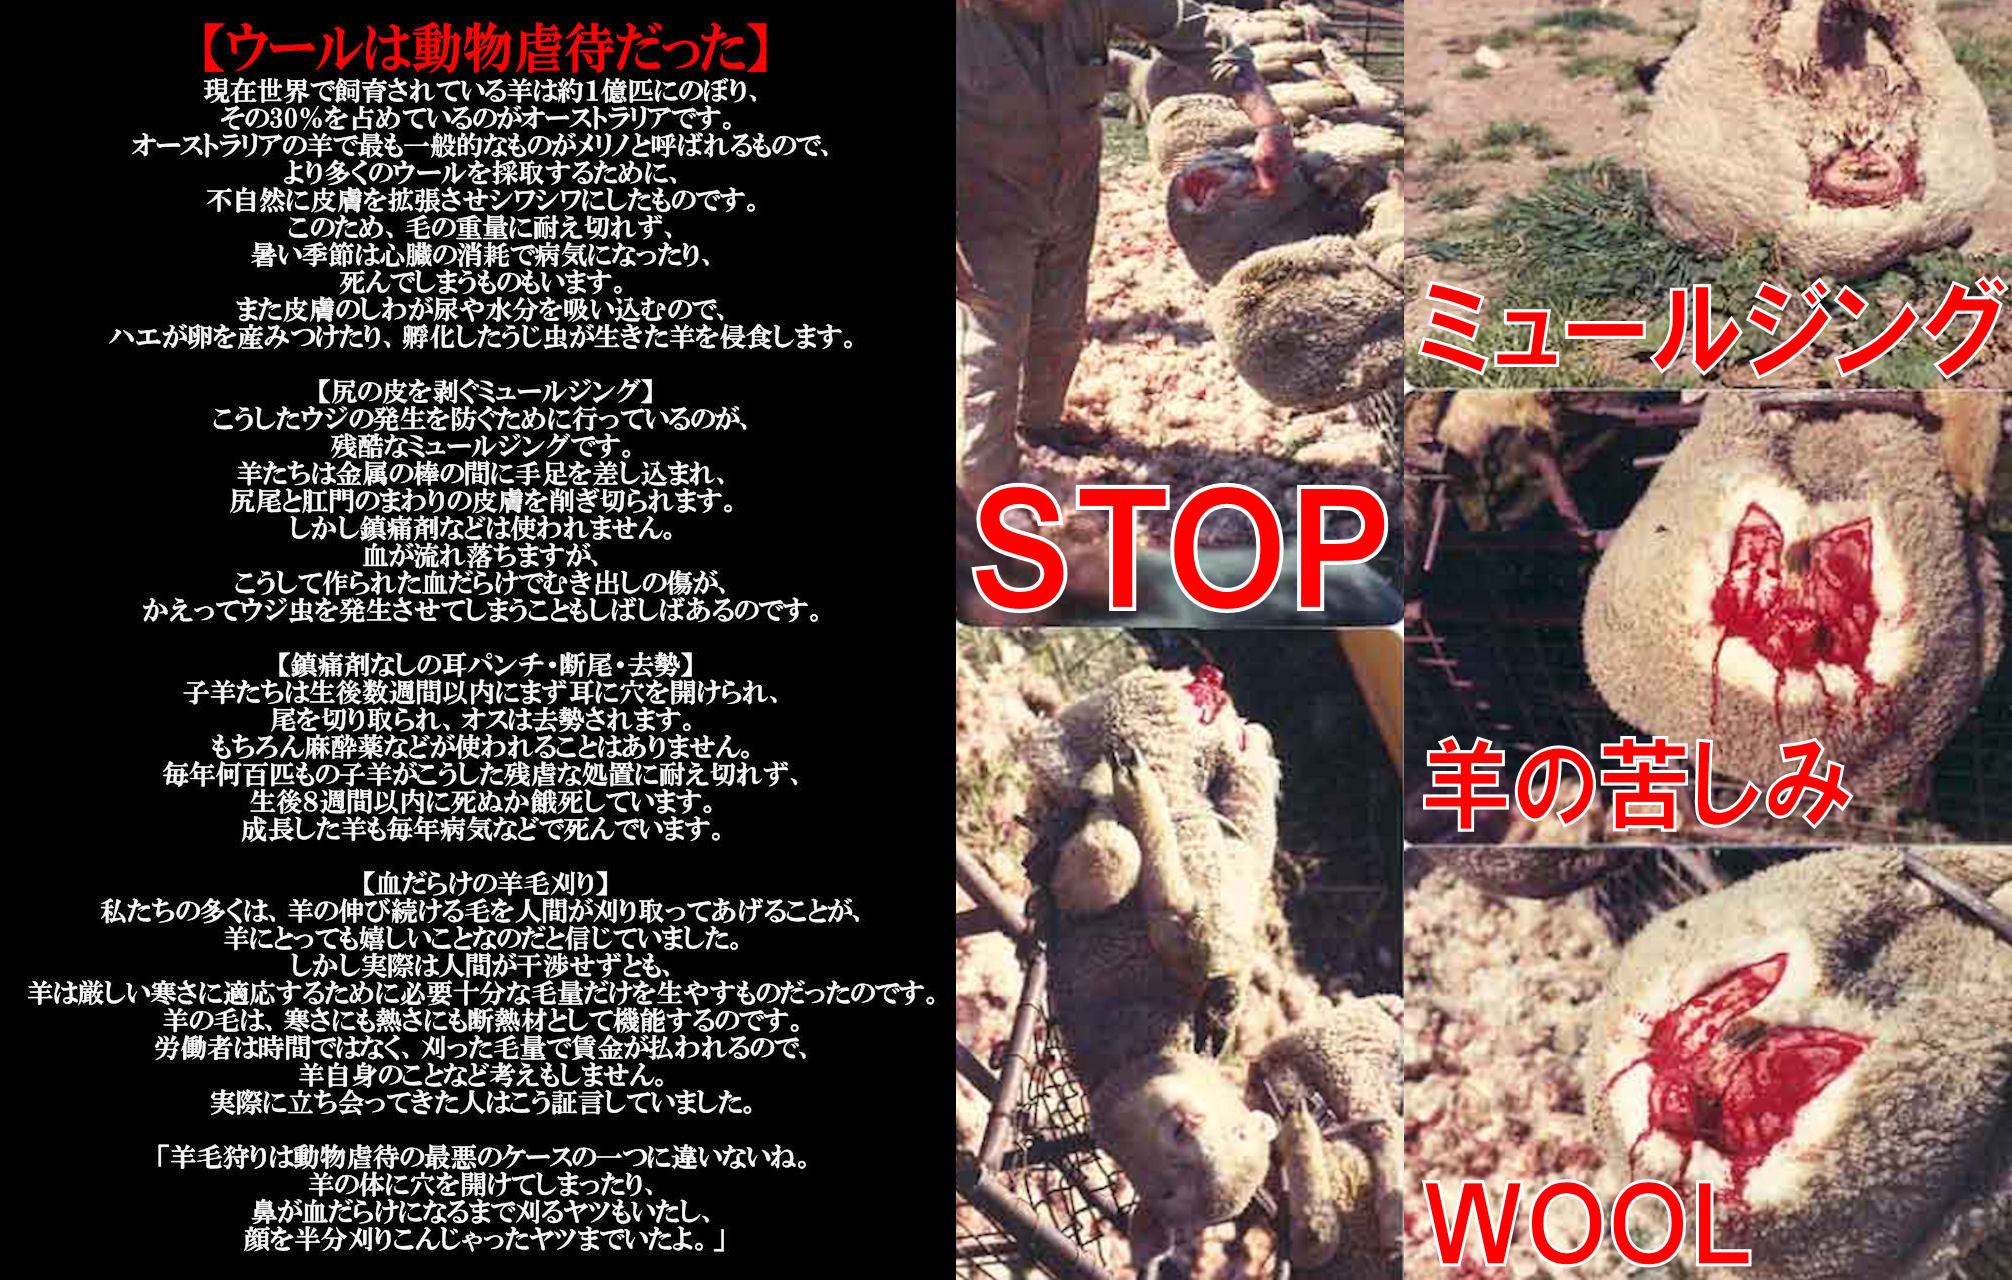 wool4_20140108224351d19.jpg